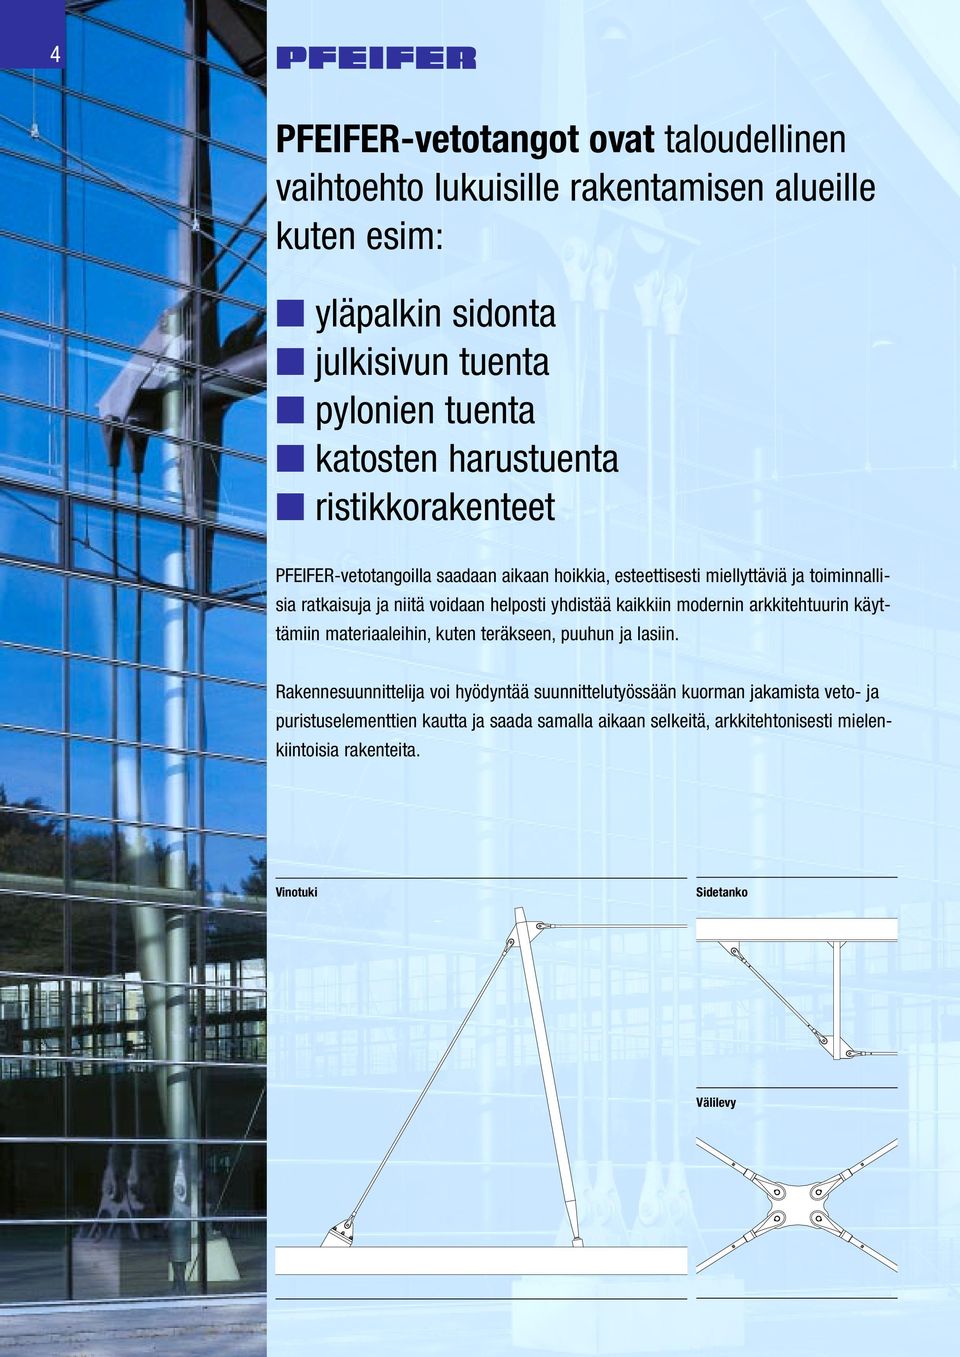 yhdistää kaikkiin modernin arkkitehtuurin käyttämiin materiaaleihin, kuten teräkseen, puuhun ja lasiin.